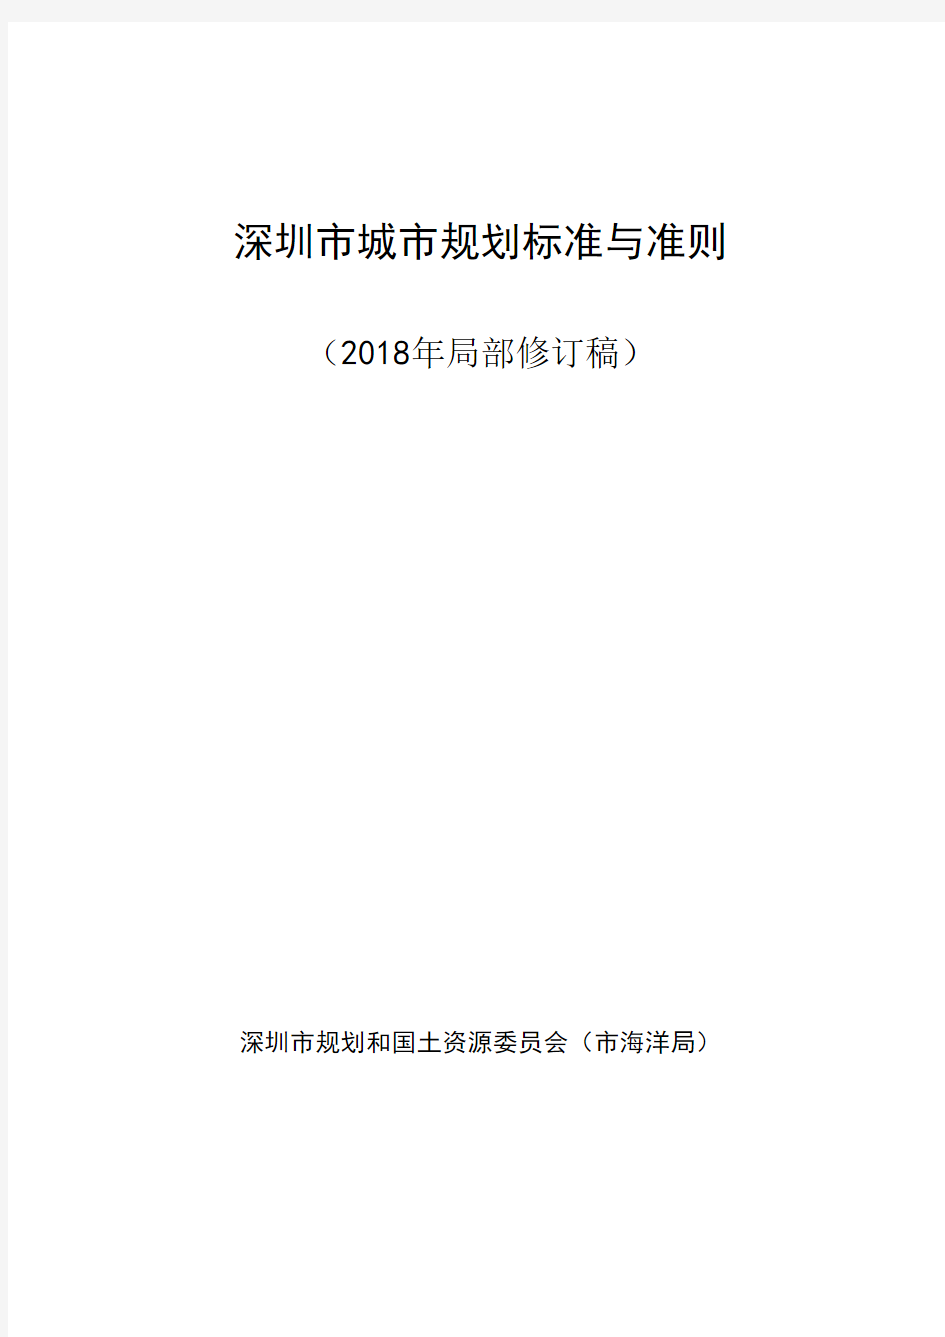 《深圳市城市规划标准与准则》(2018年局部修订)条文完整版